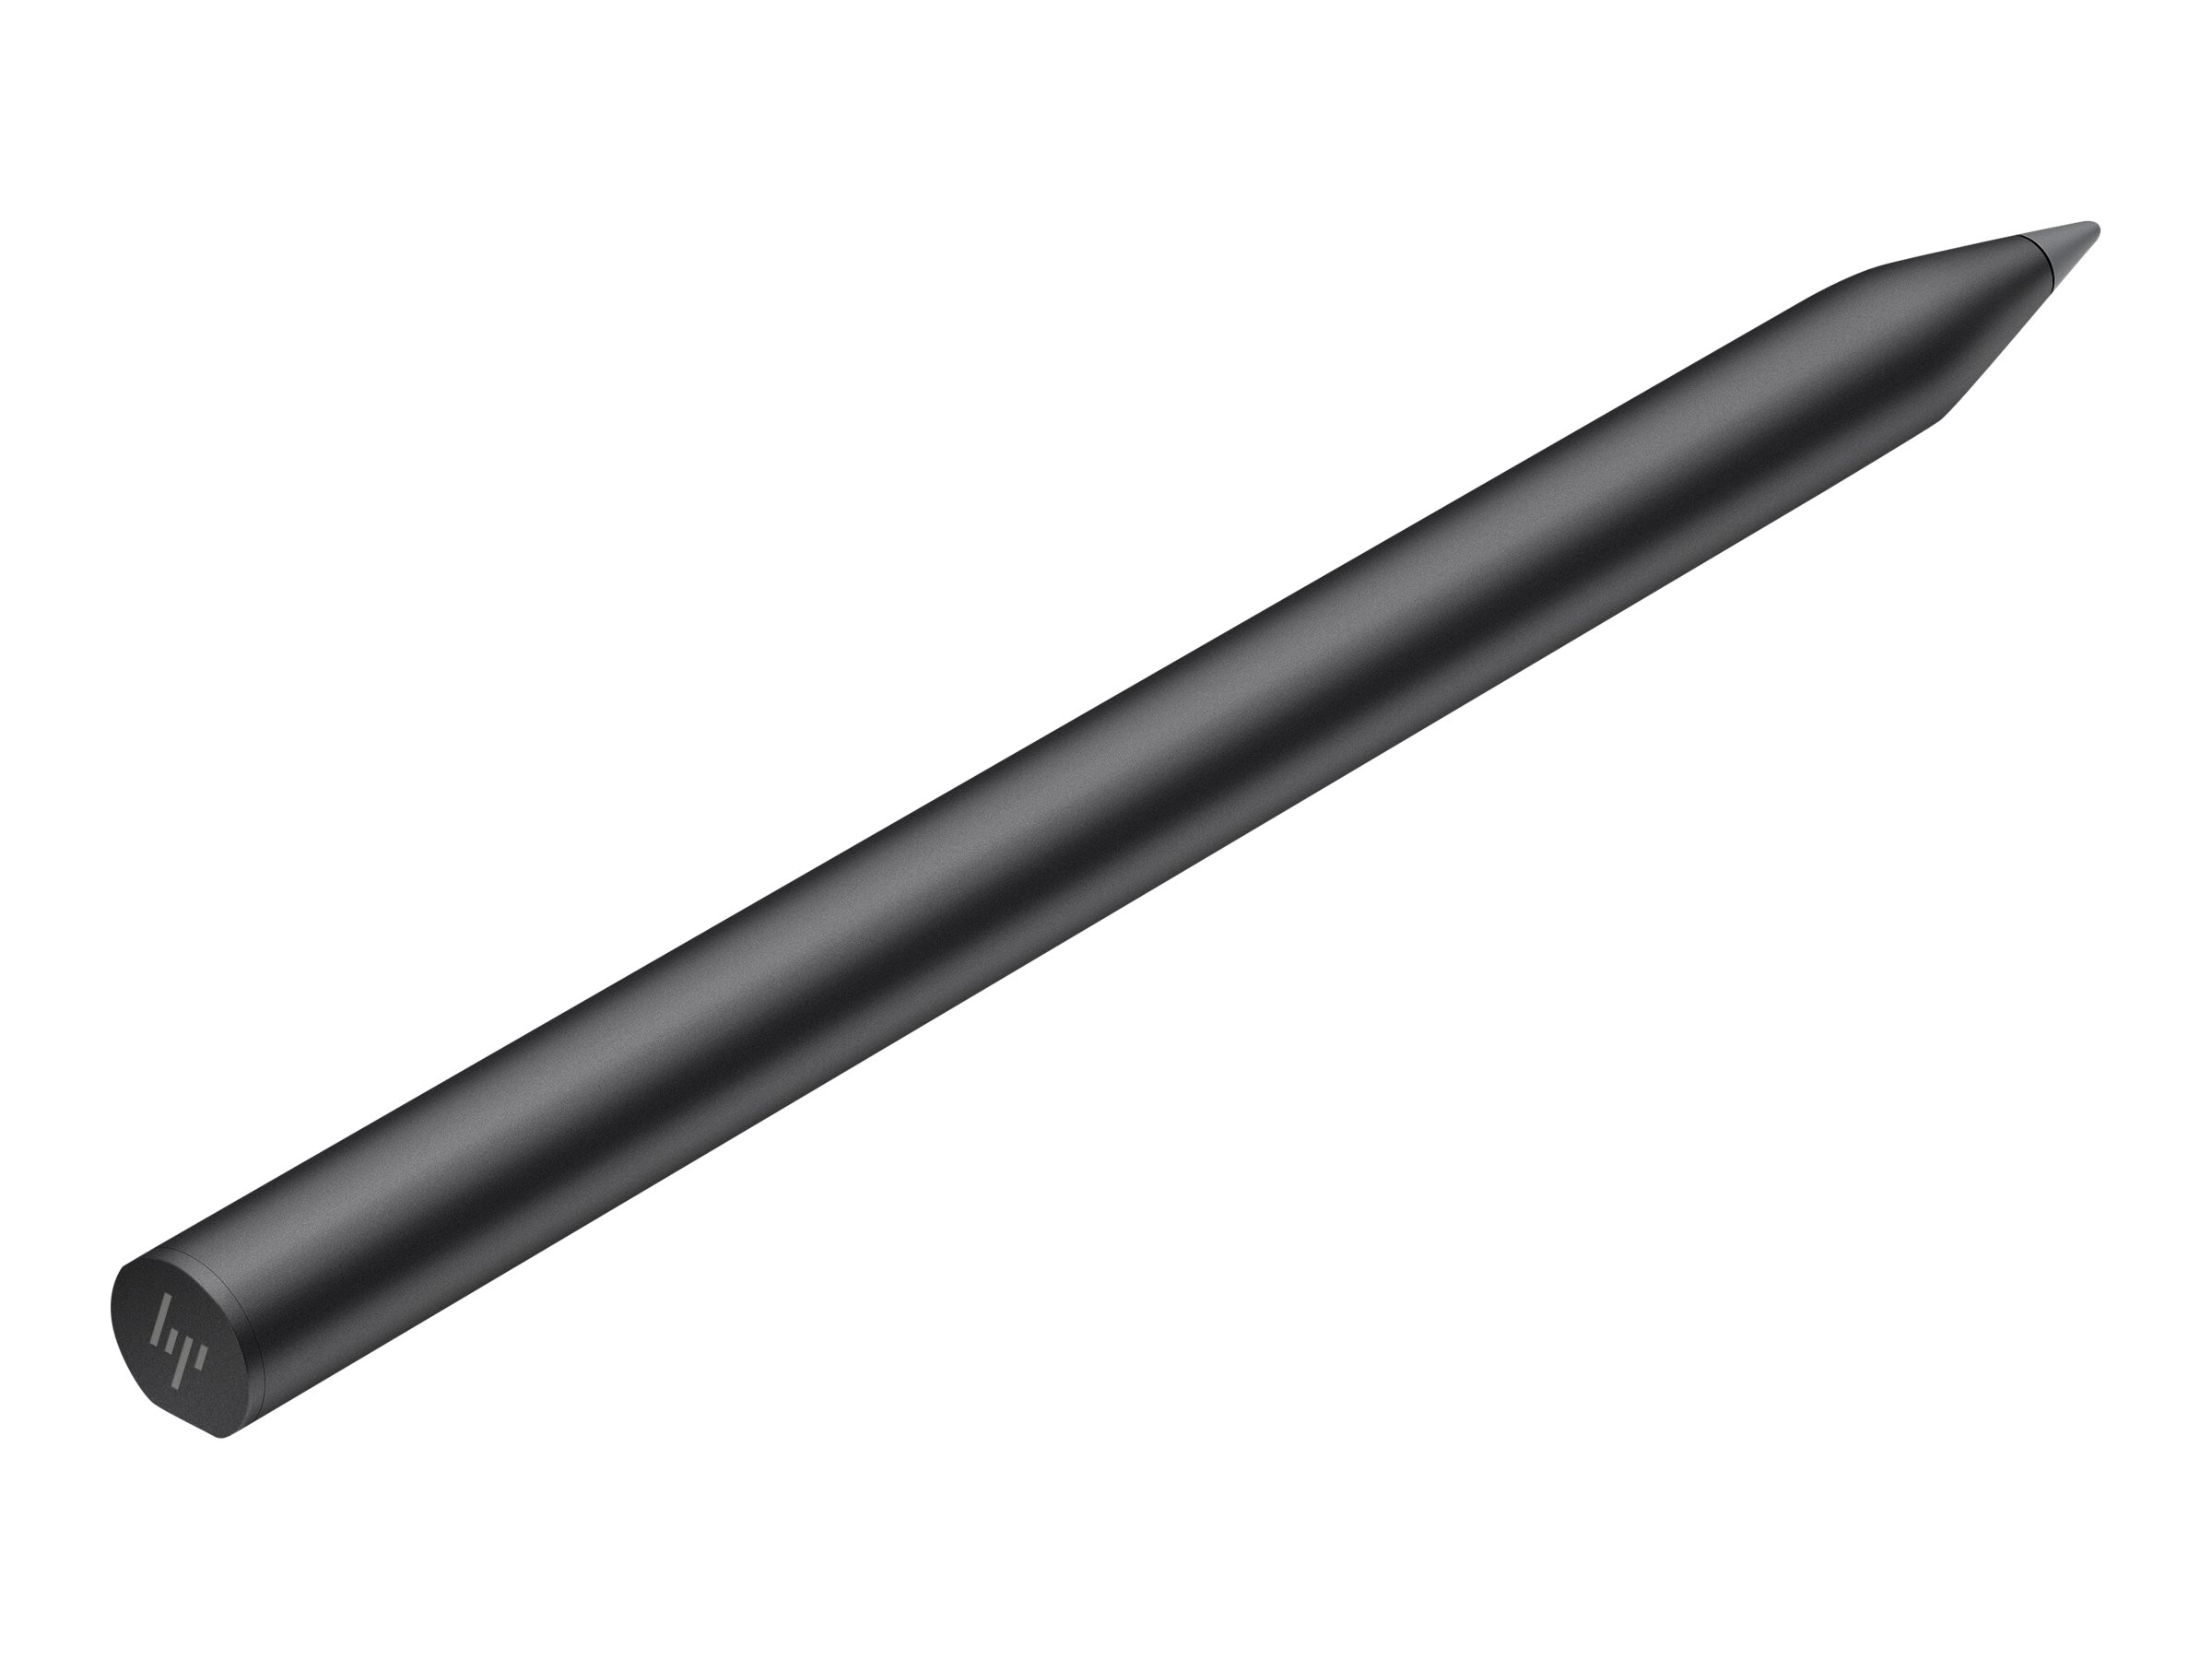 HP Rechargeable Tilt Pen - Digitaler Stift - Charcoal Grey - für ENVY x360 Laptop; Pavilion x360 Laptop; Spectre x360 Laptop